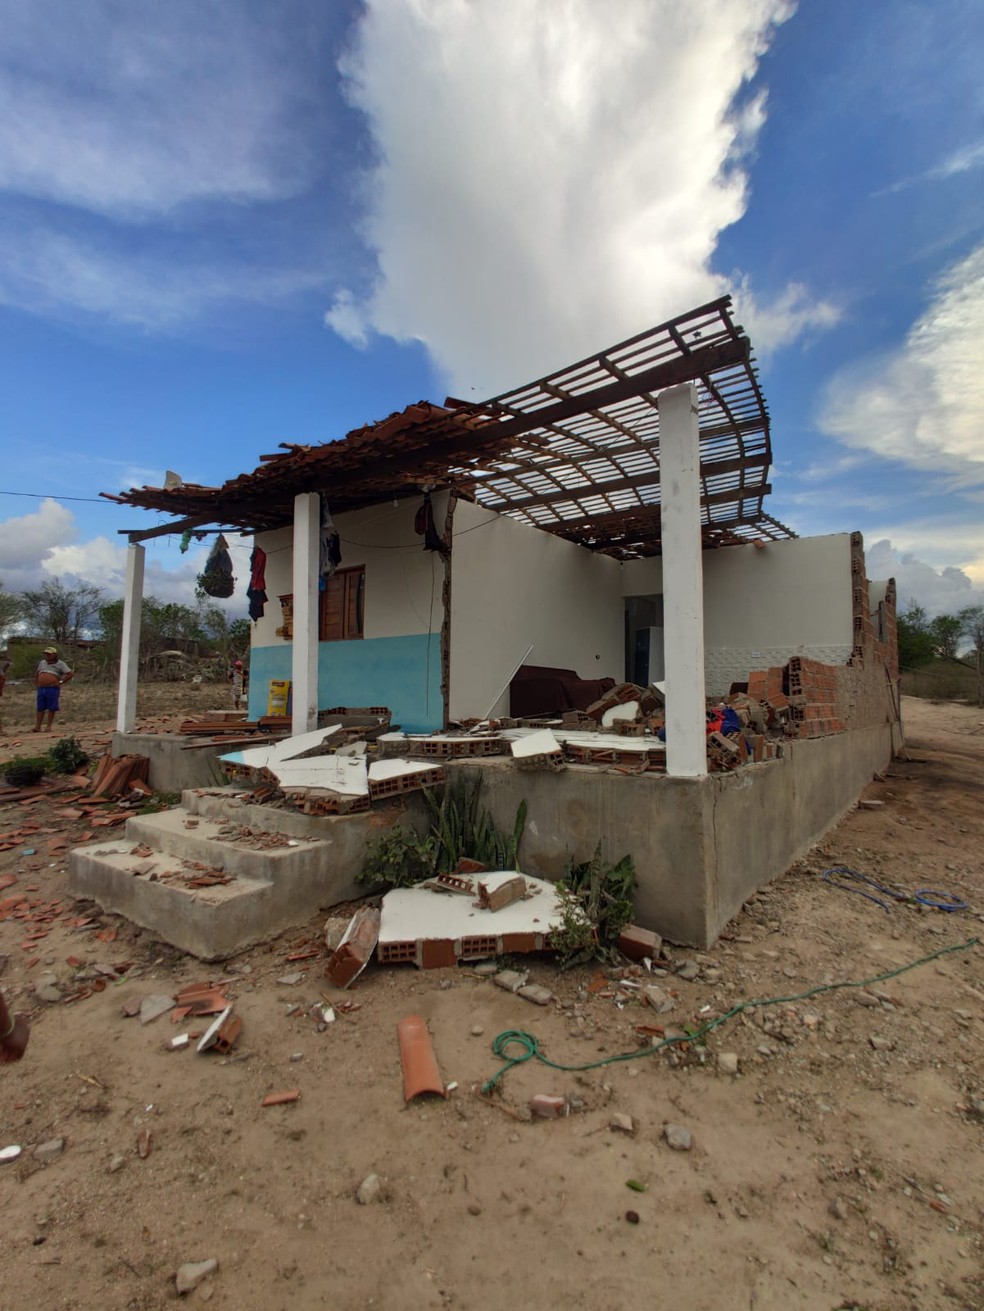 Casa destelhada por redemoinho de terra em Estrela de Alagoas, Agreste de AL — Foto: Arquivo pessoal